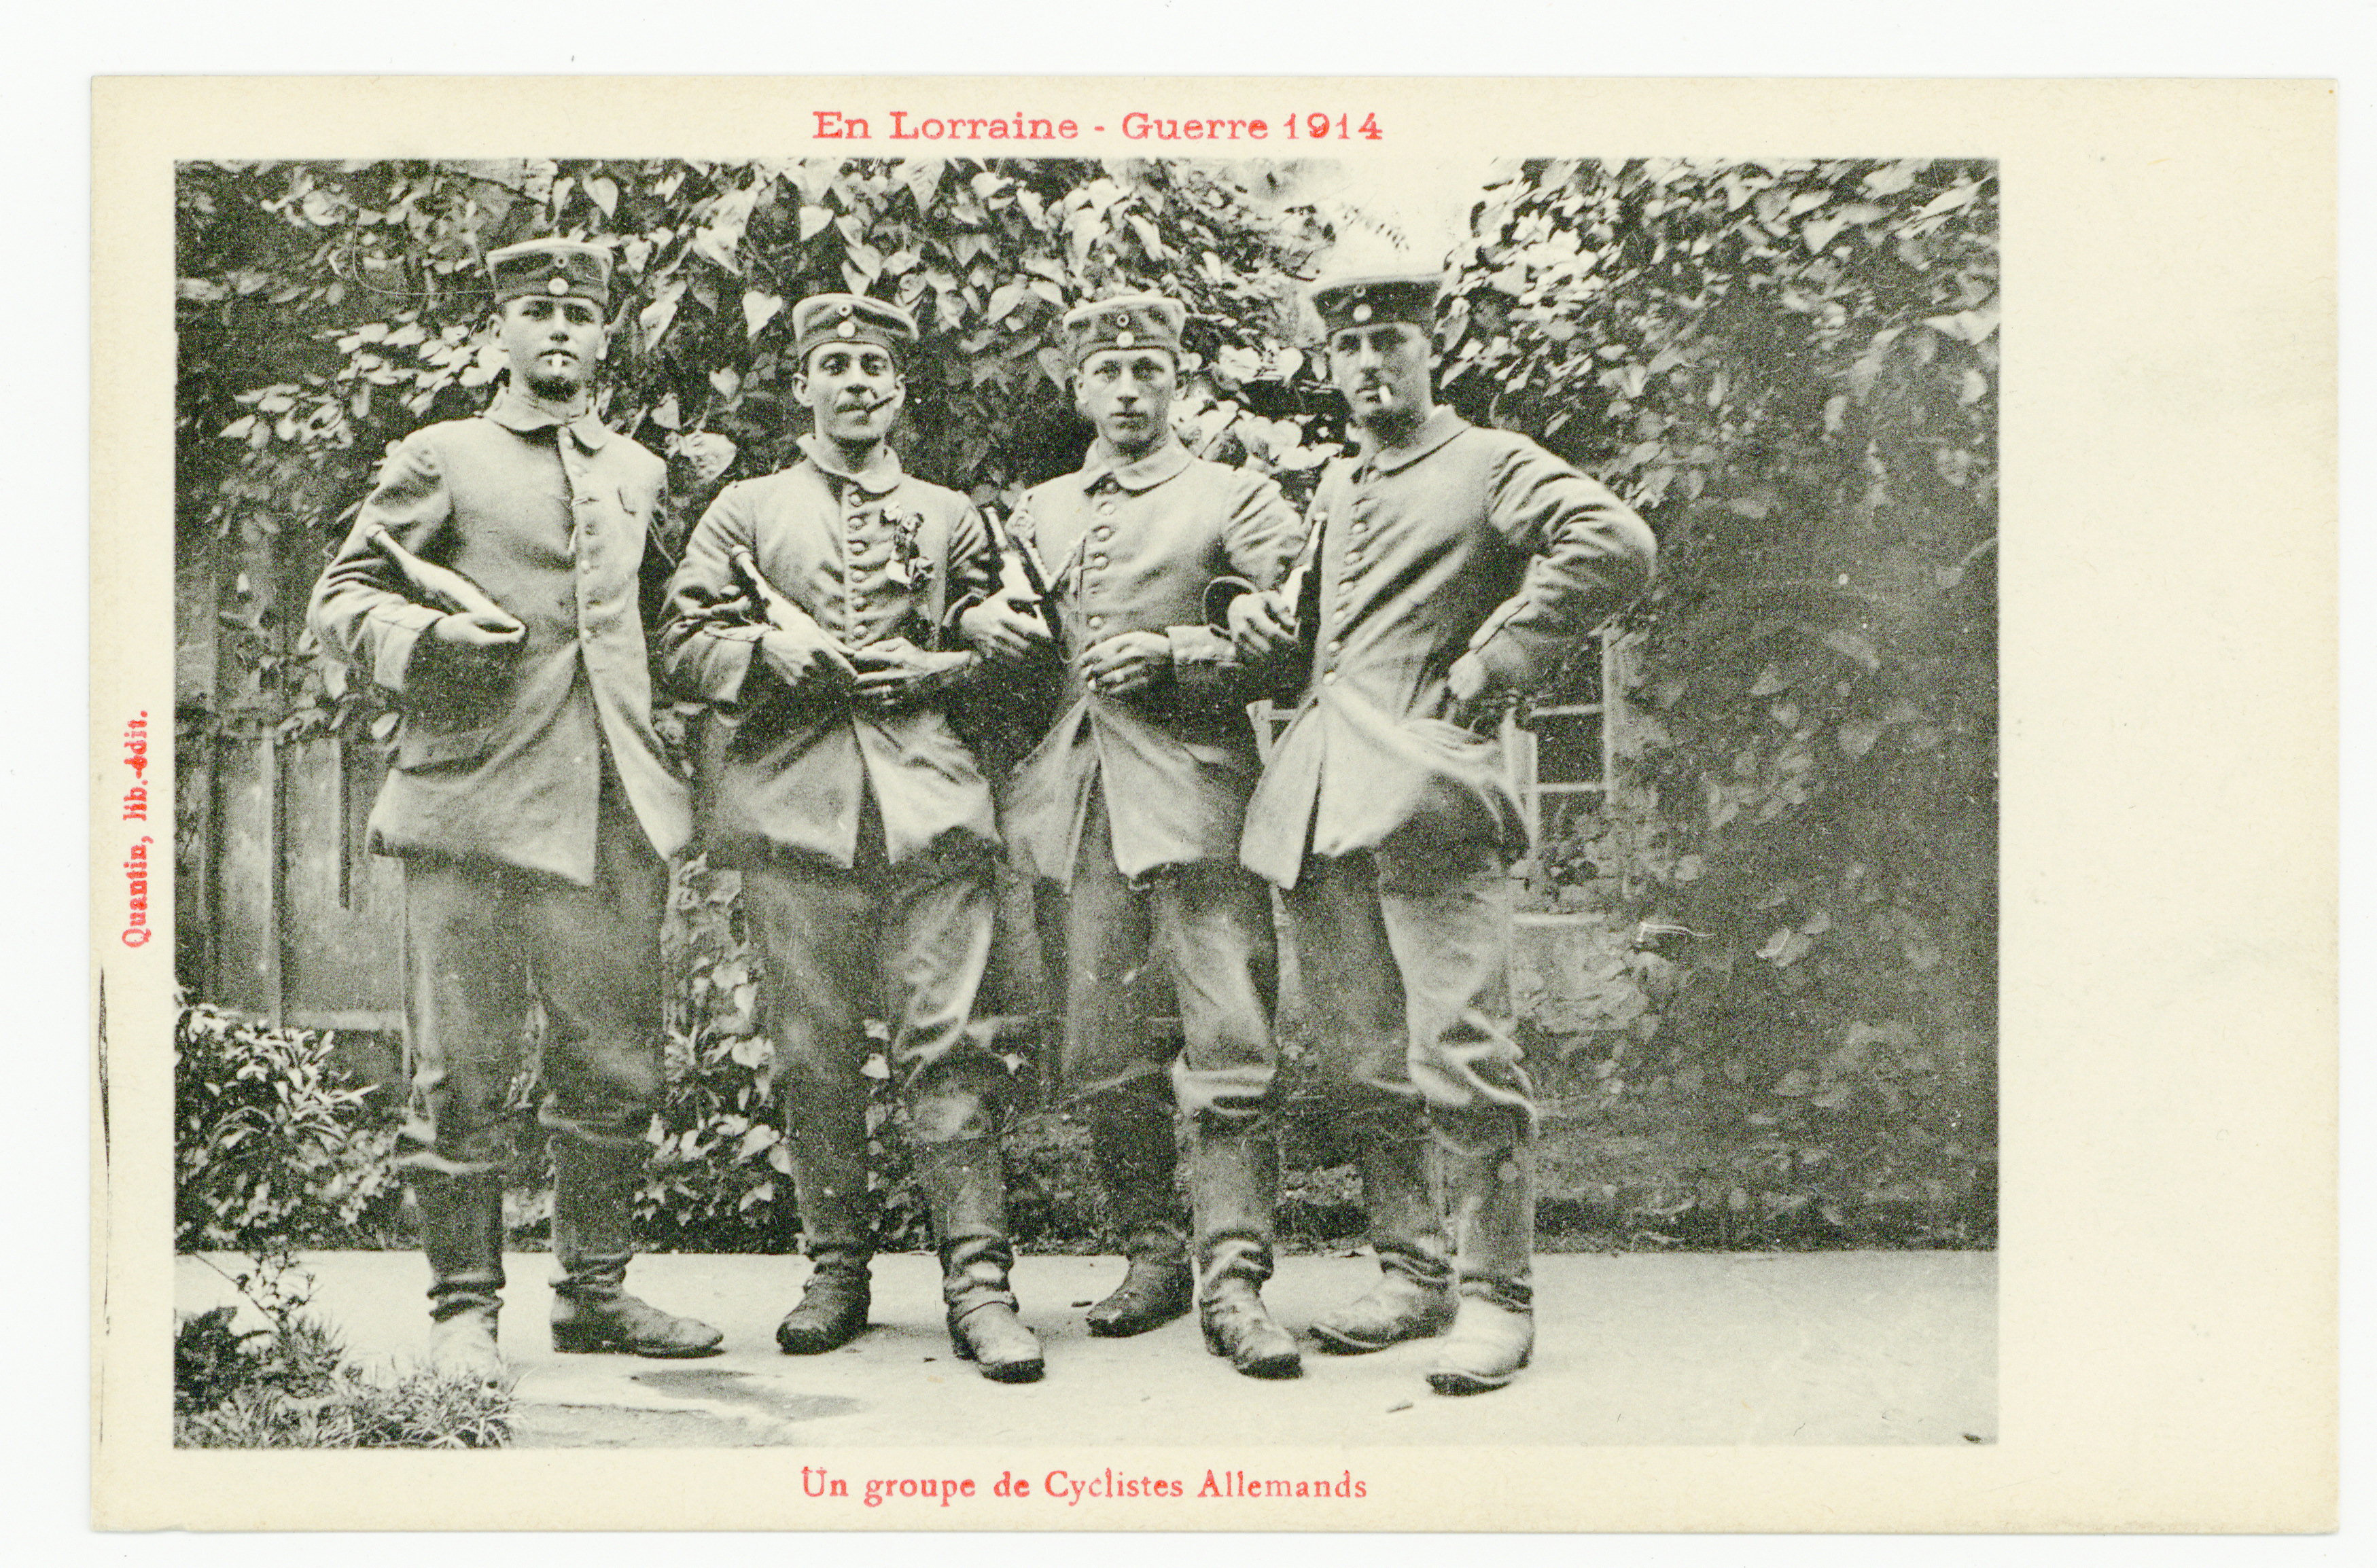 Contenu du Un groupe de cyclistes allemands, en Lorraine, guerre 1914